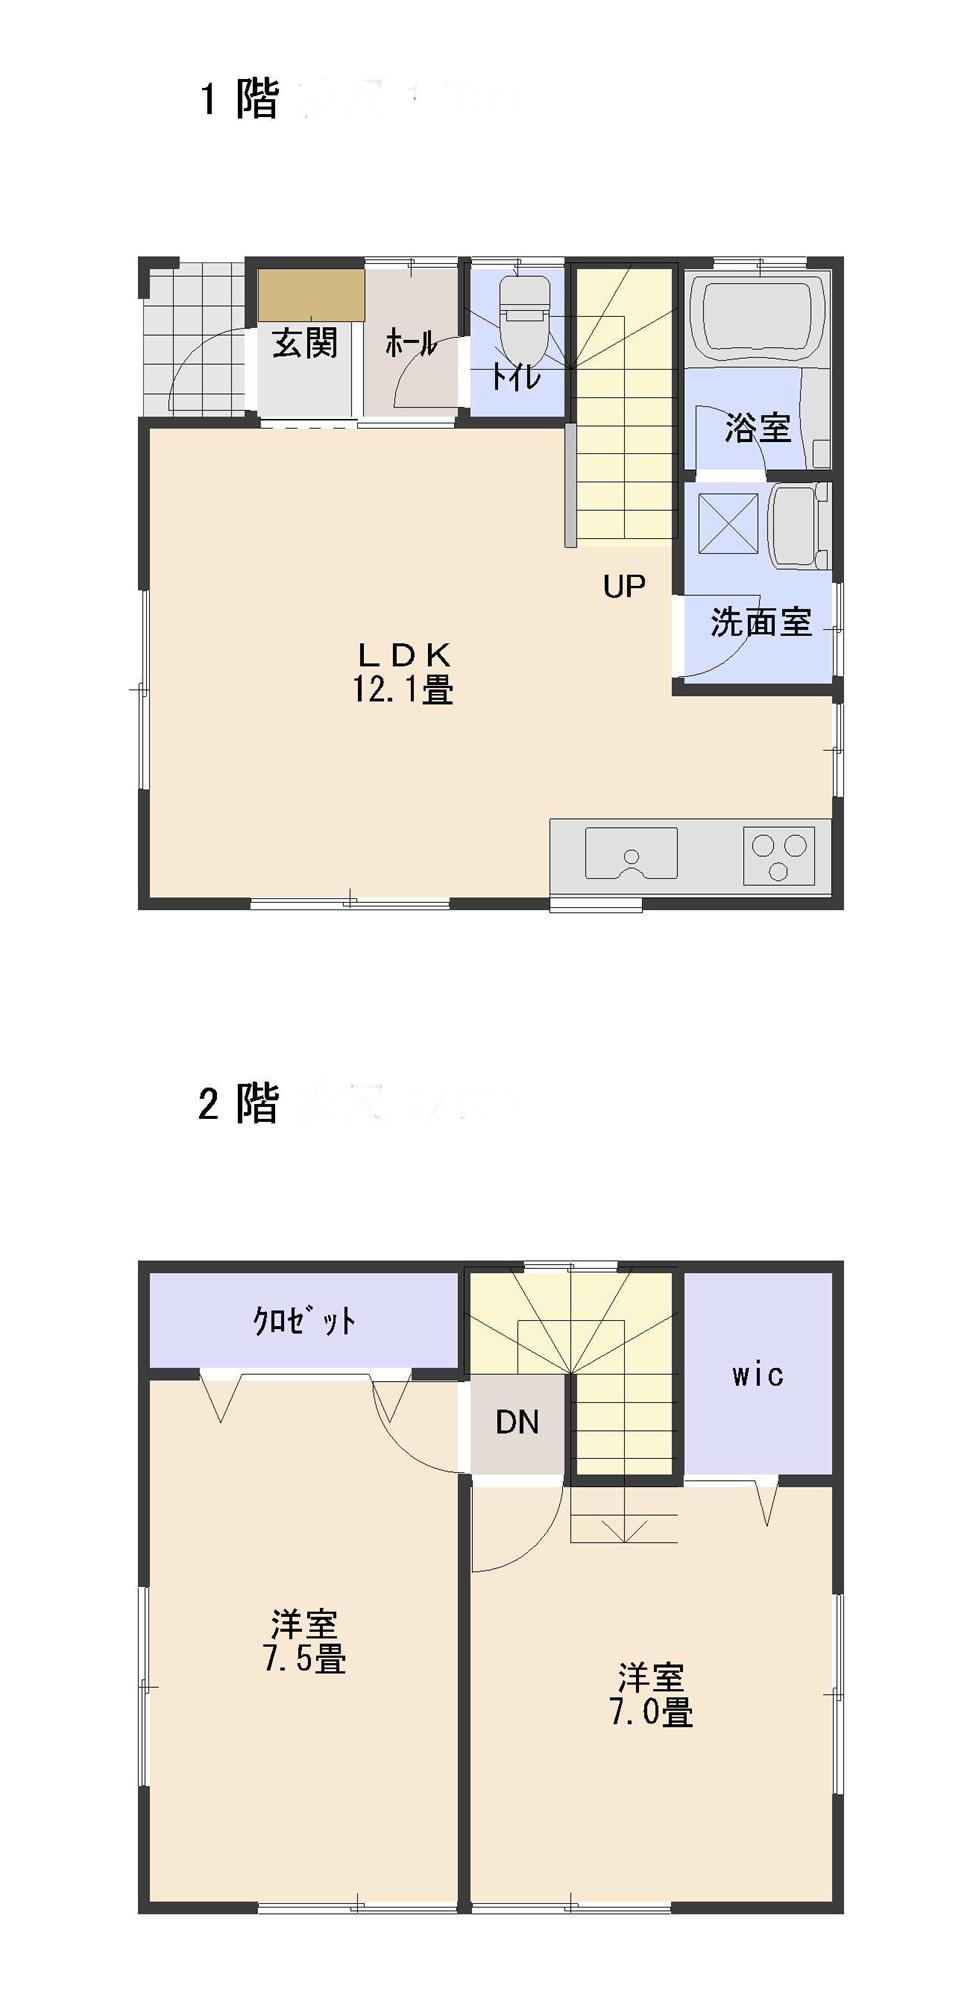 Floor plan. 16 million yen, 2LDK, Land area 53.01 sq m , Building area 63.34 sq m